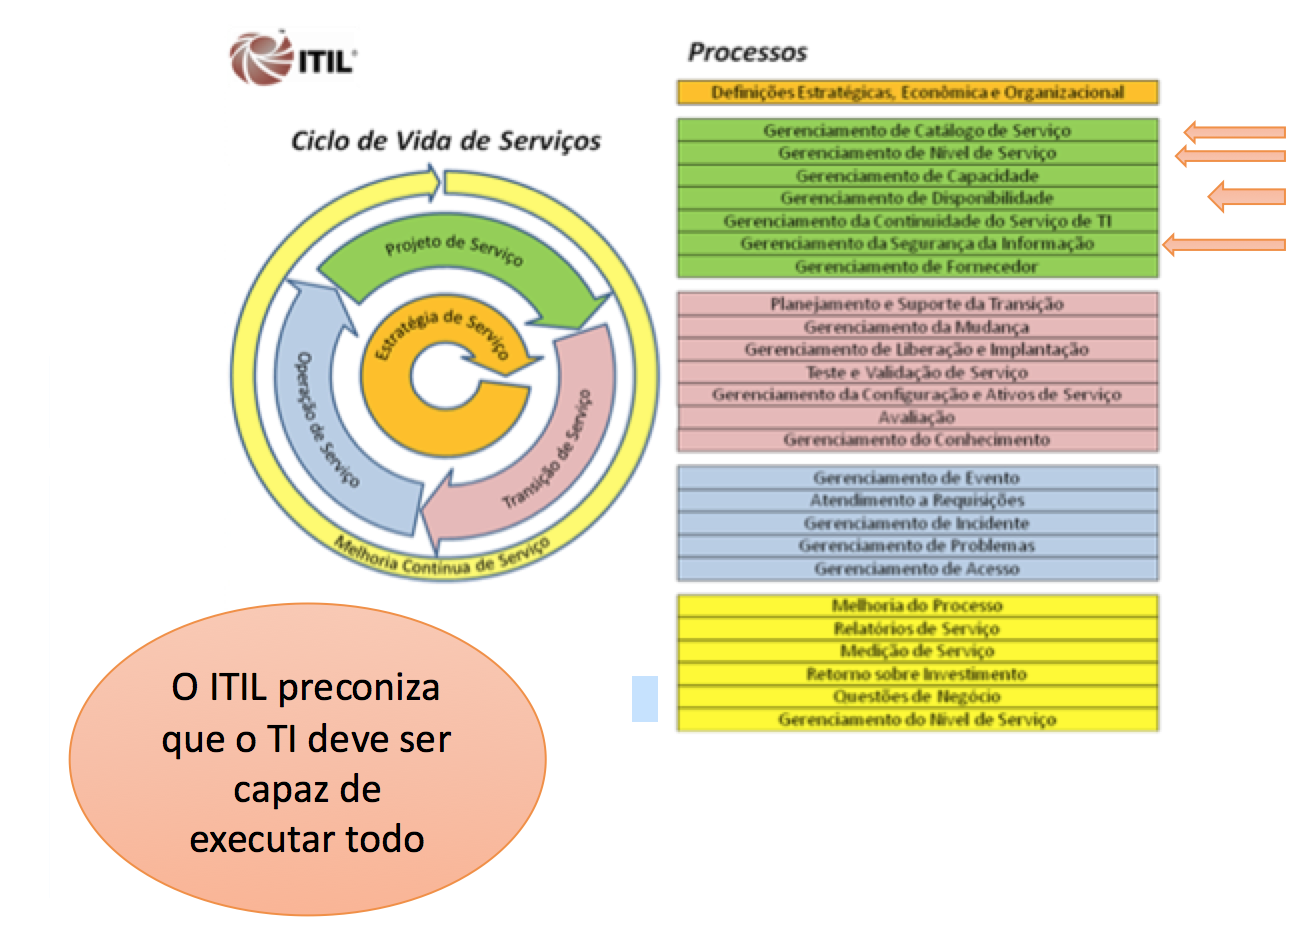 Figura - O ITIL preconiza que a TI deve ser capaz de executar tudo